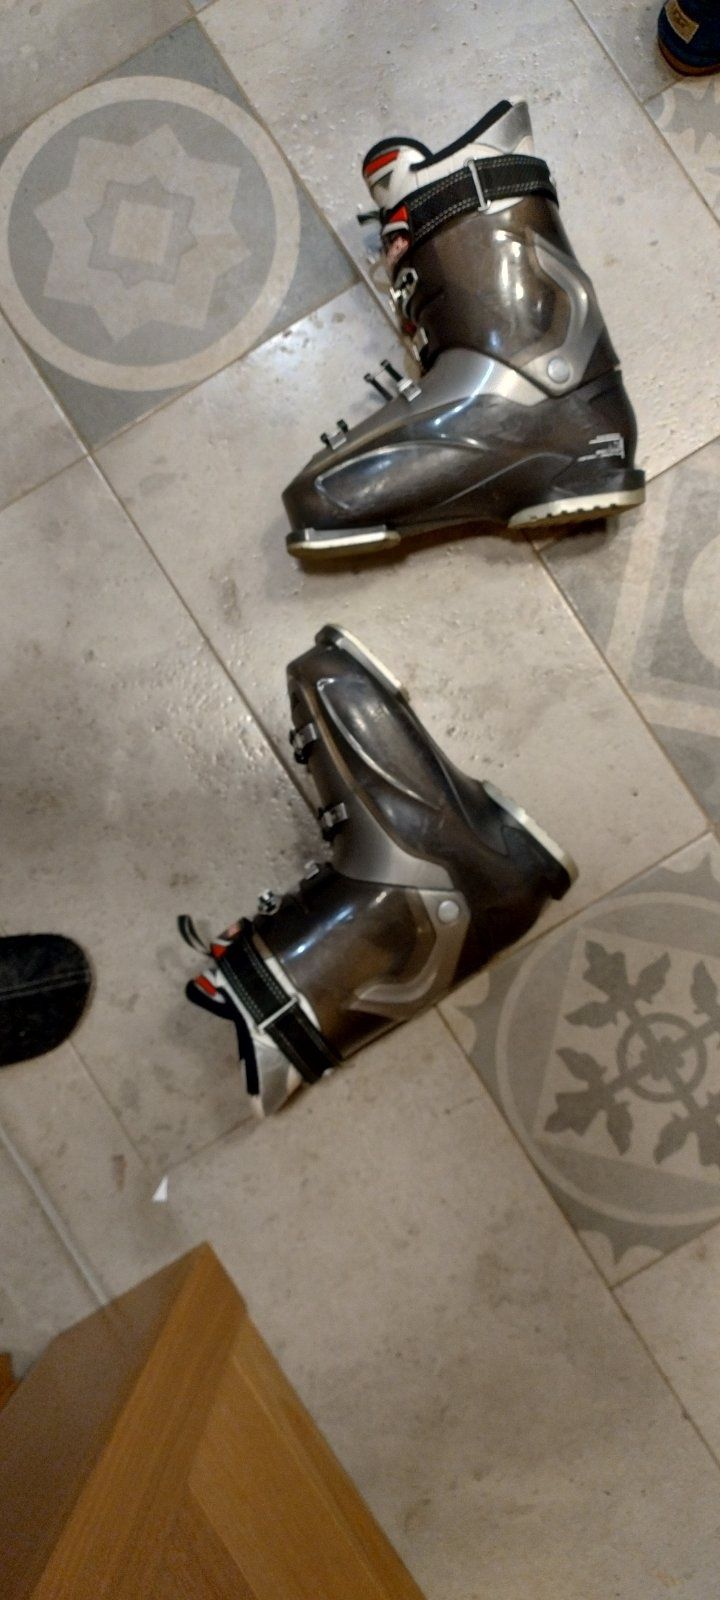 Ски обувки Rossignol Alias sensor 80, размер Мондо 27.5, Евро 43